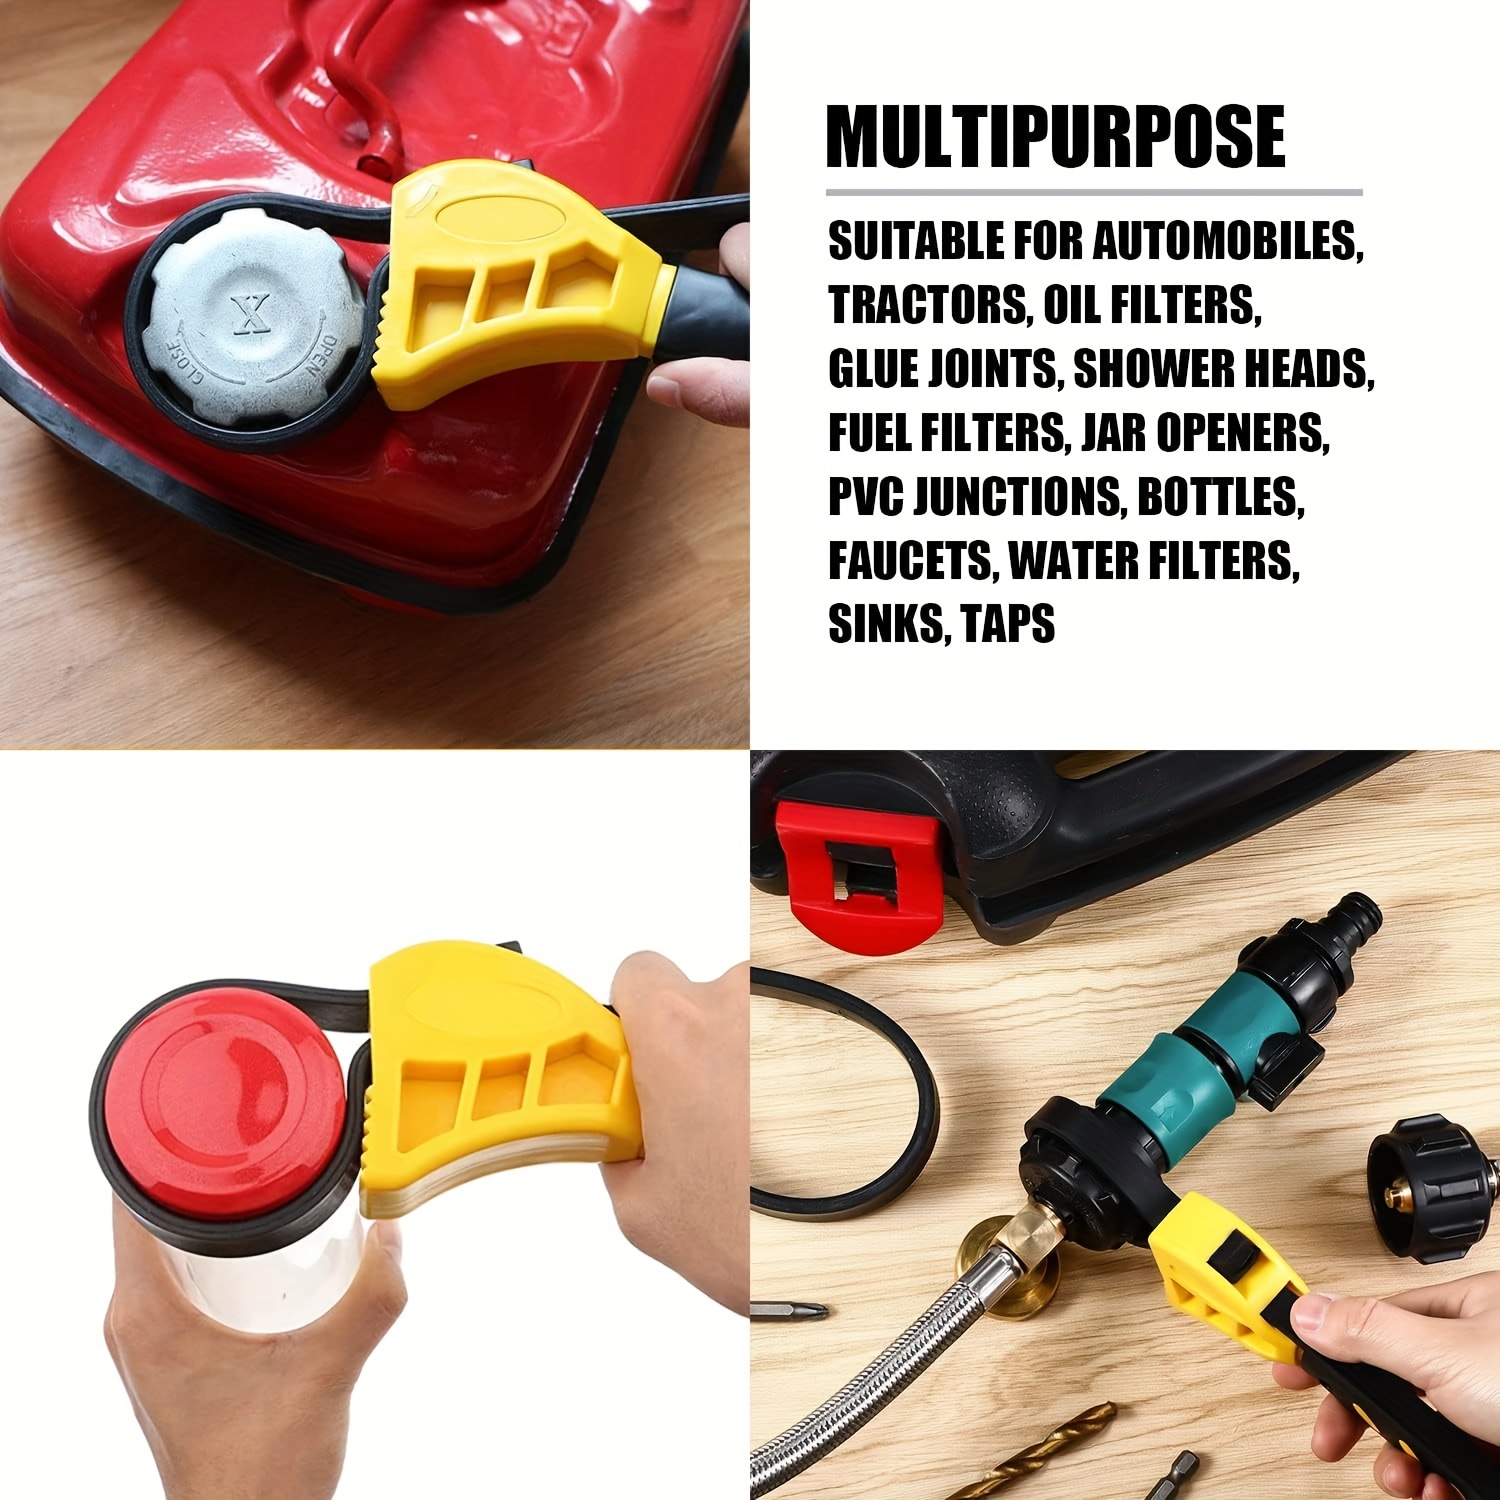 Multi-Purpose Strap Wrench